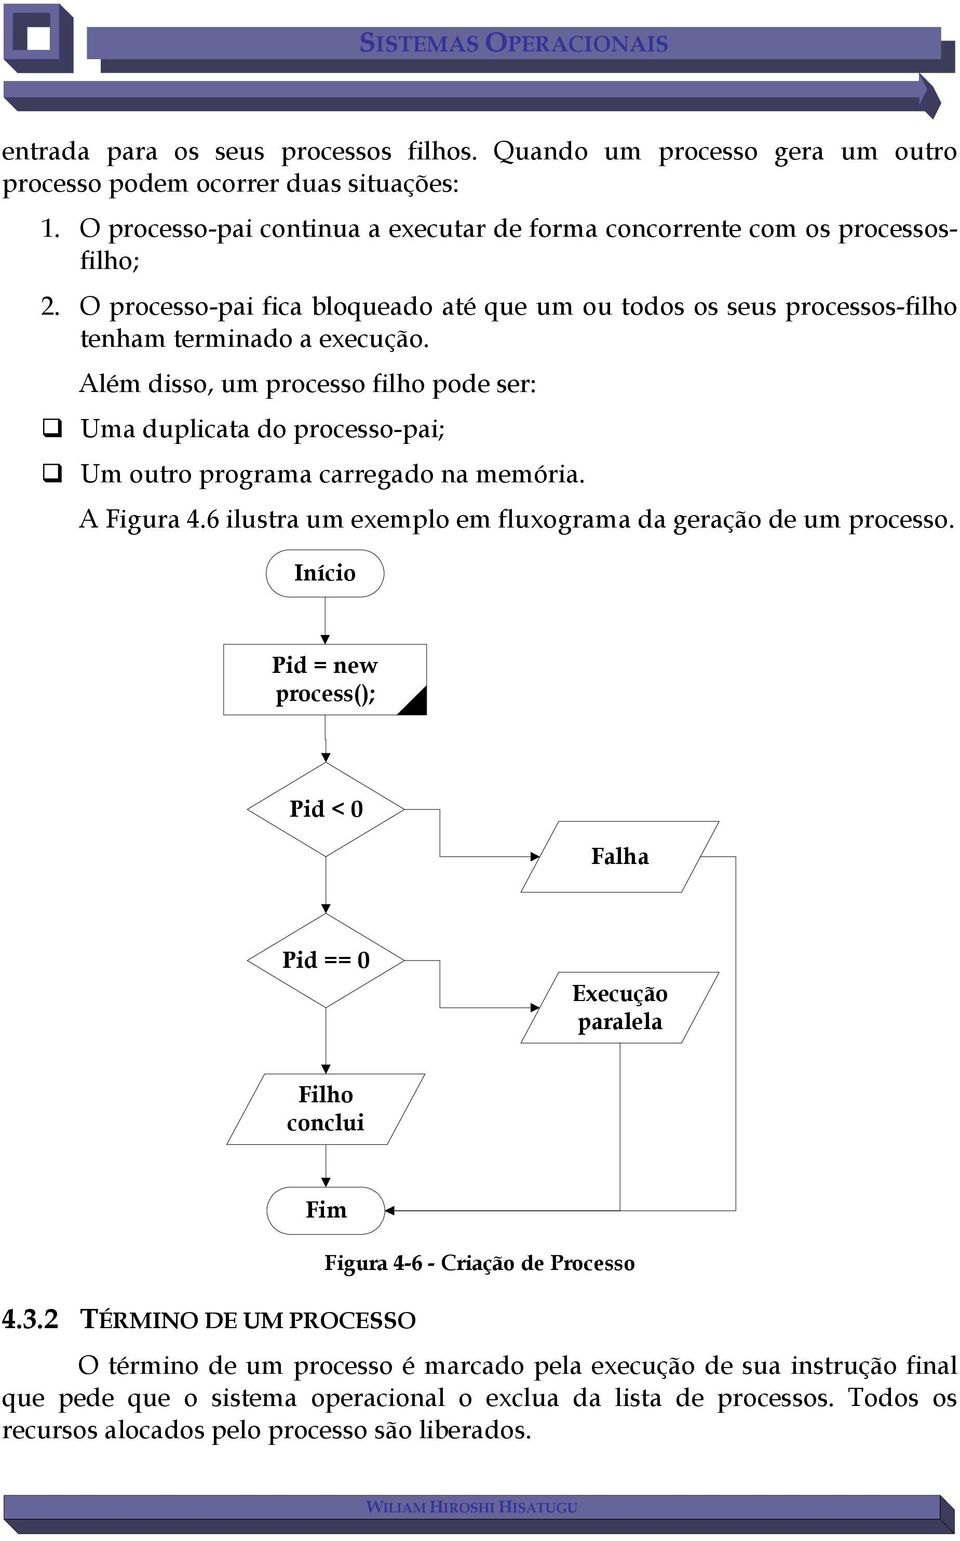 Além disso, um processo filho pode ser: Uma duplicata do processo-pai; Um outro programa carregado na memória. A Figura 4.6 ilustra um exemplo em fluxograma da geração de um processo.